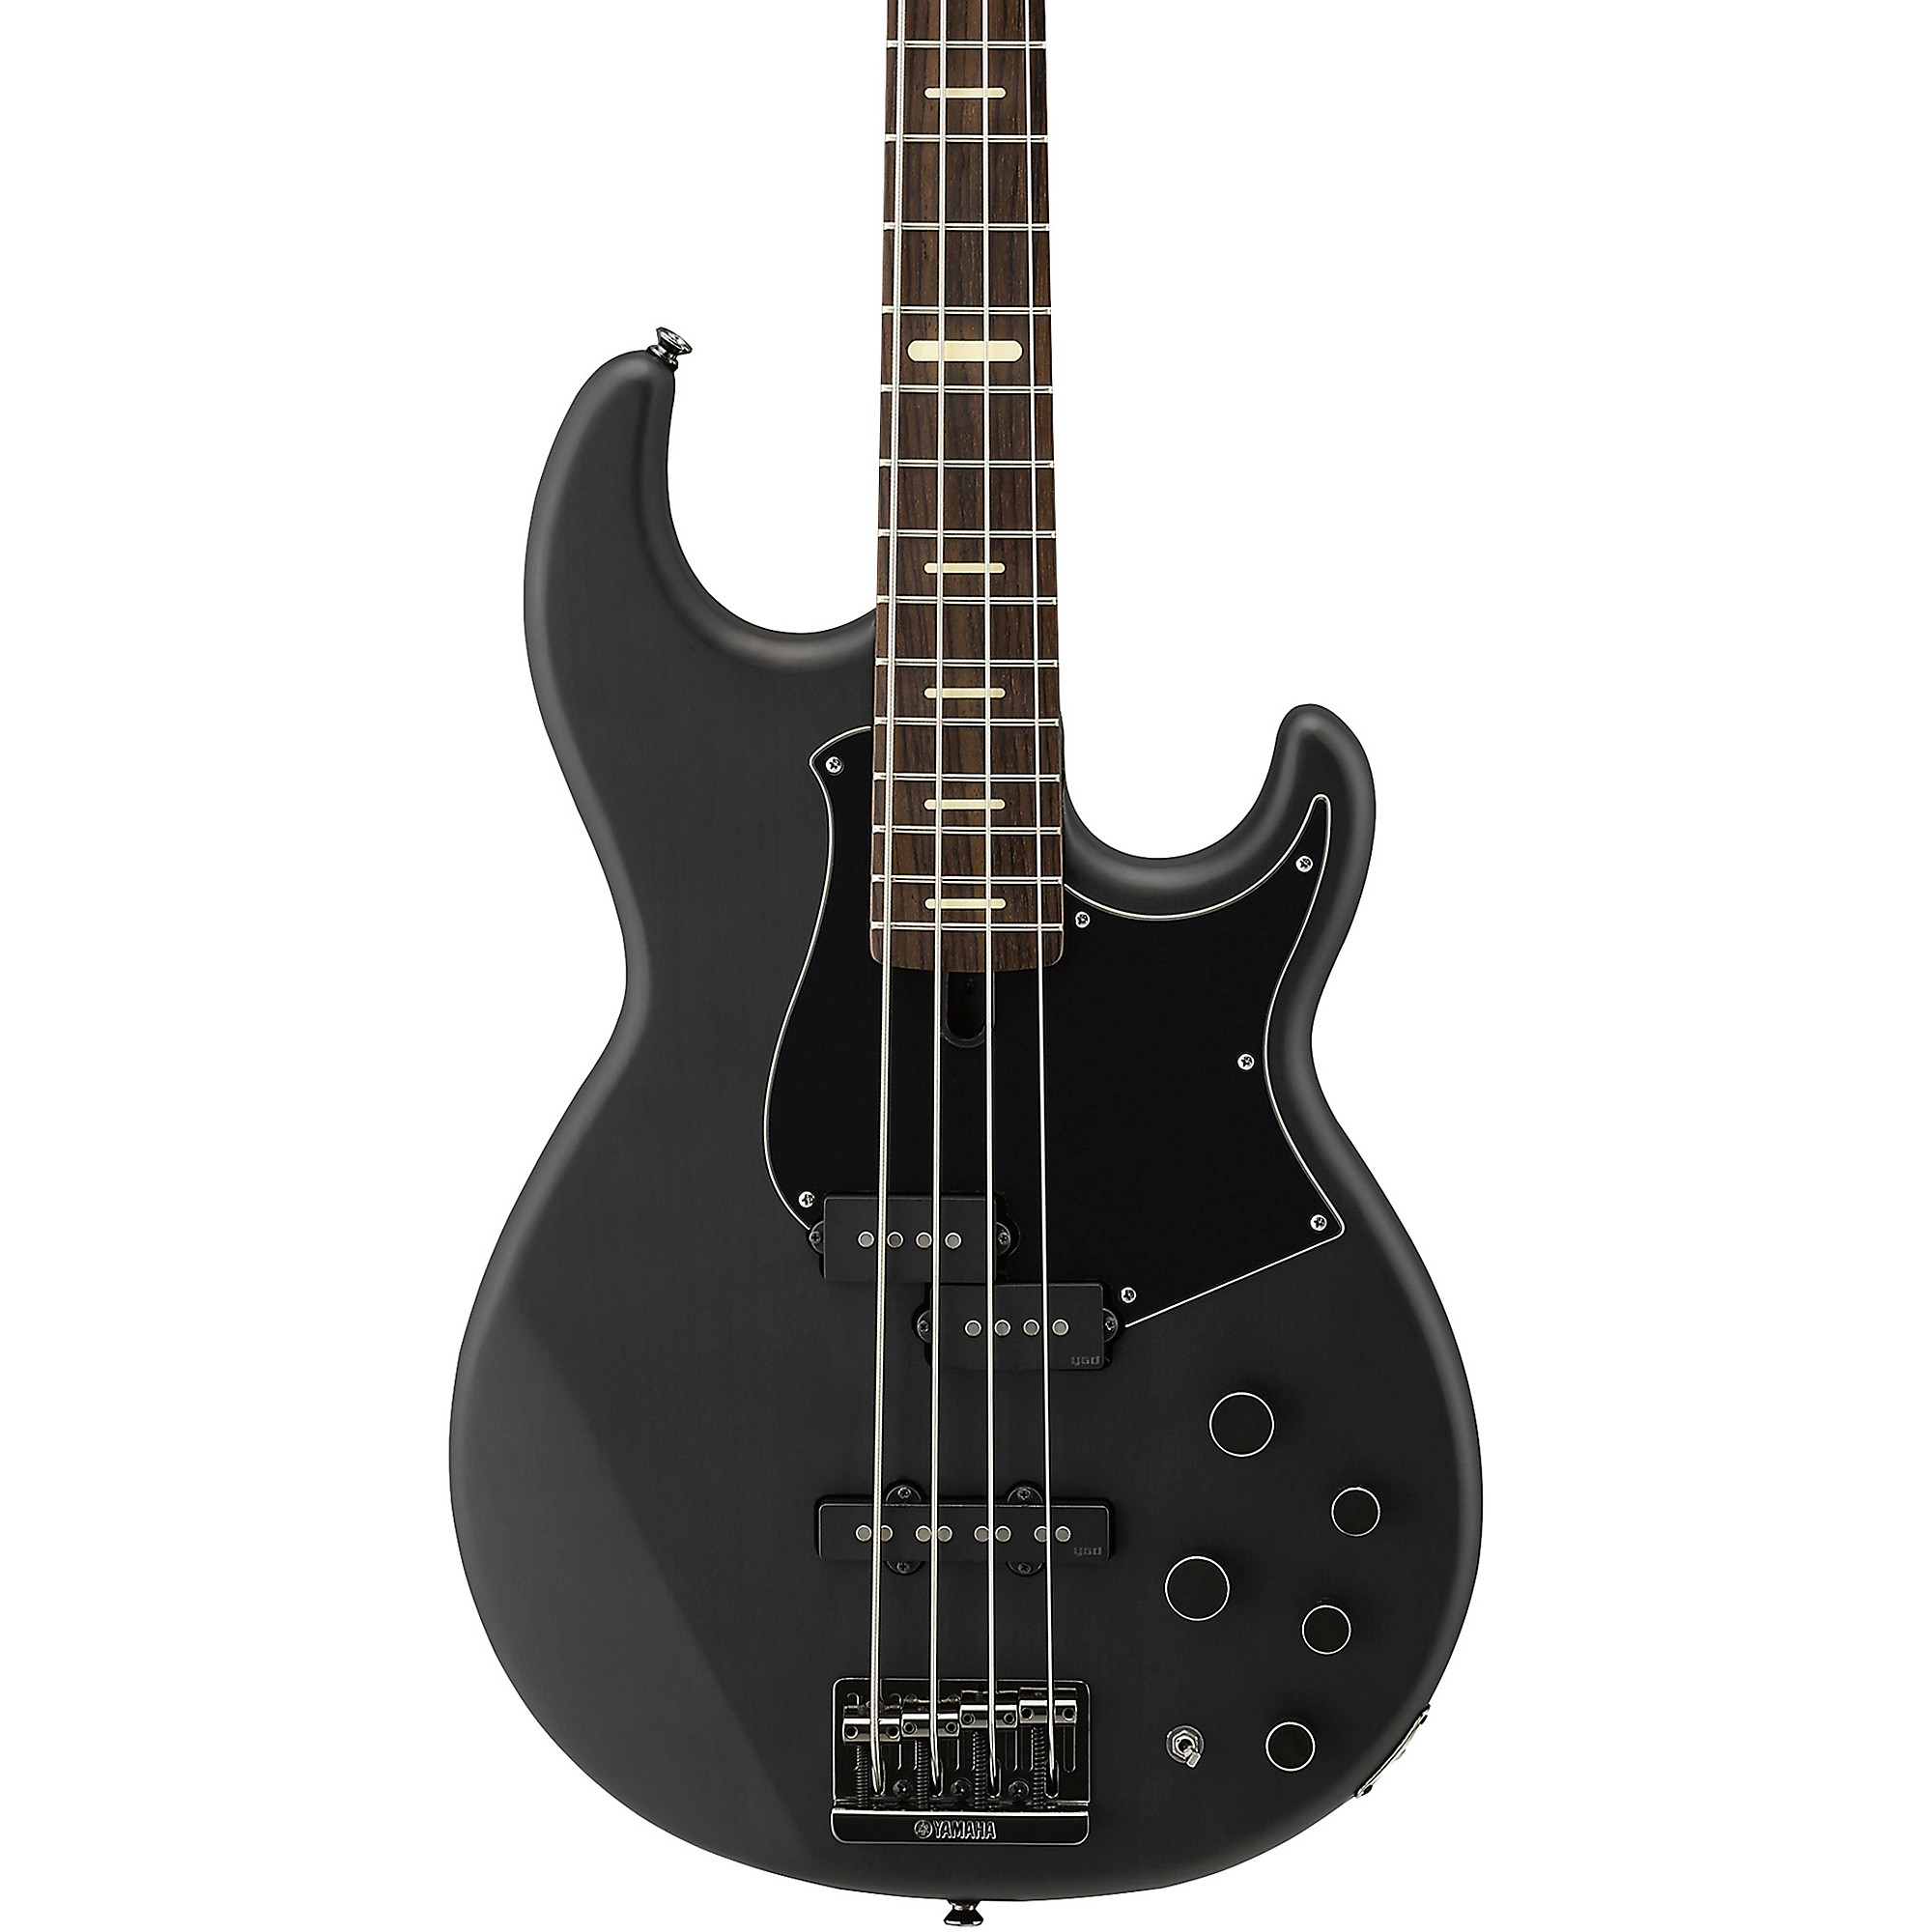 Yamaha BB734A Electric Bass Translucent Black | Guitar Center